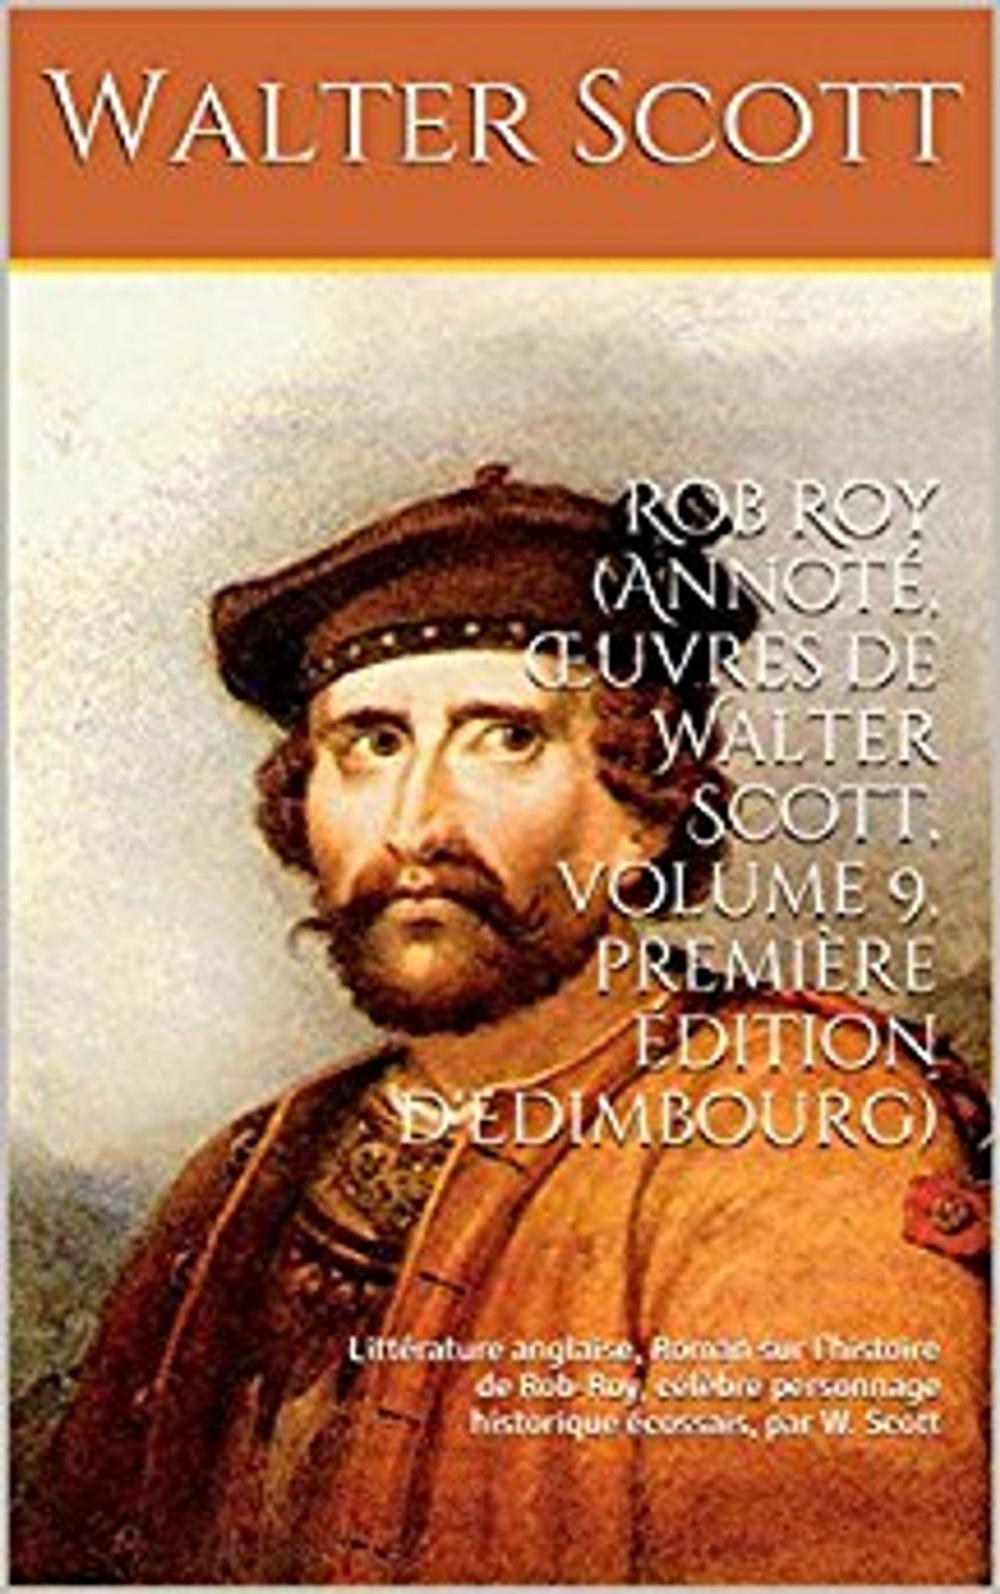 Big bigCover of Rob Roy (Annoté, Œuvres de Walter Scott, volume 9, première édition d'Edimbourg)